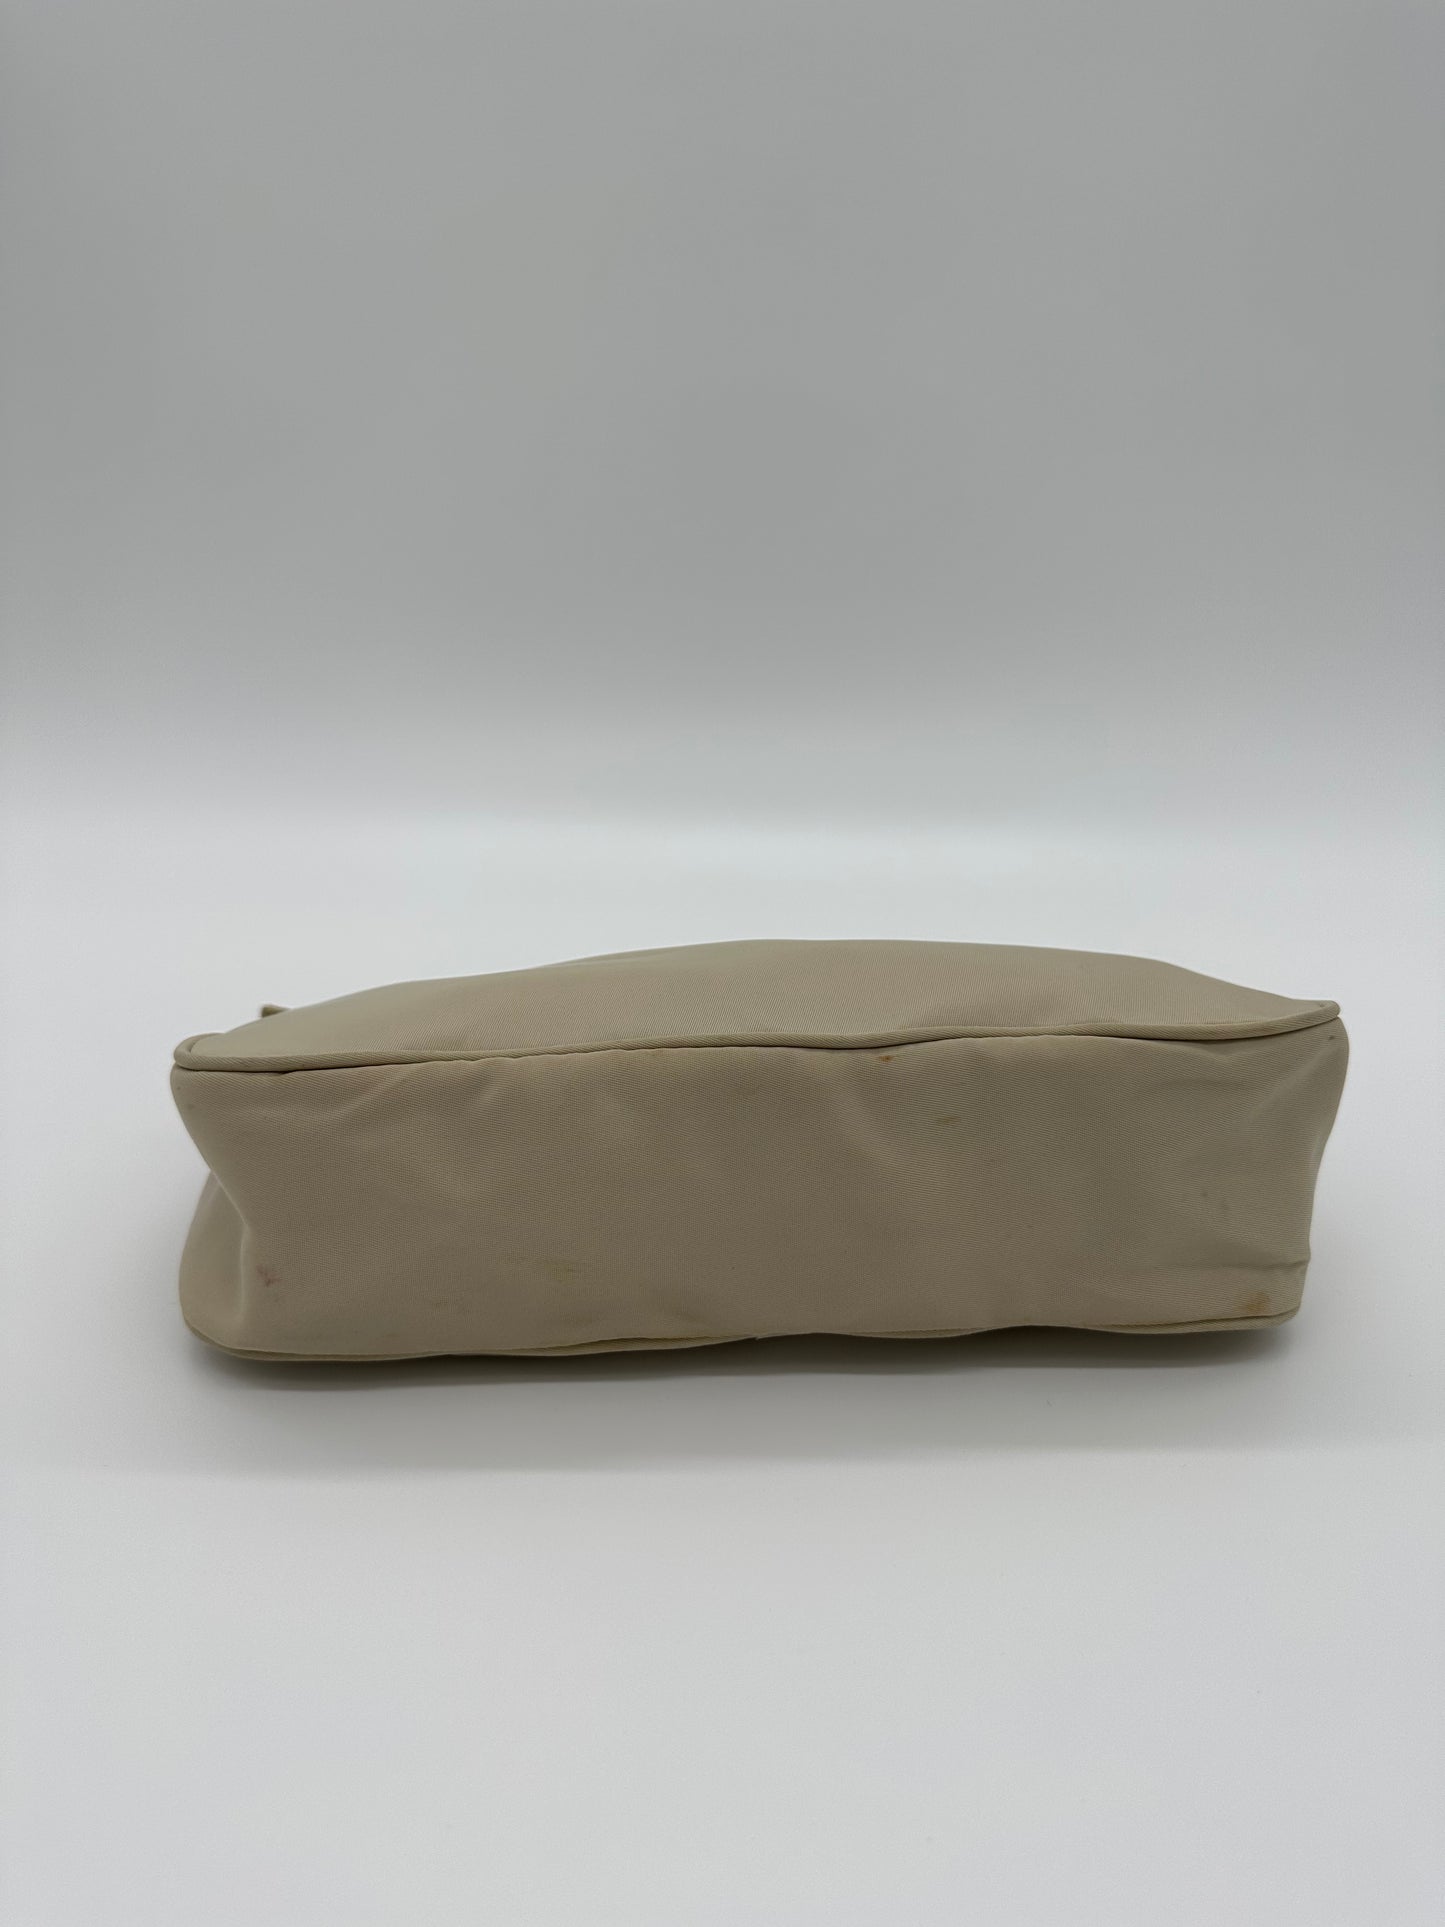 Cream Prada 90s Shoulder Bag